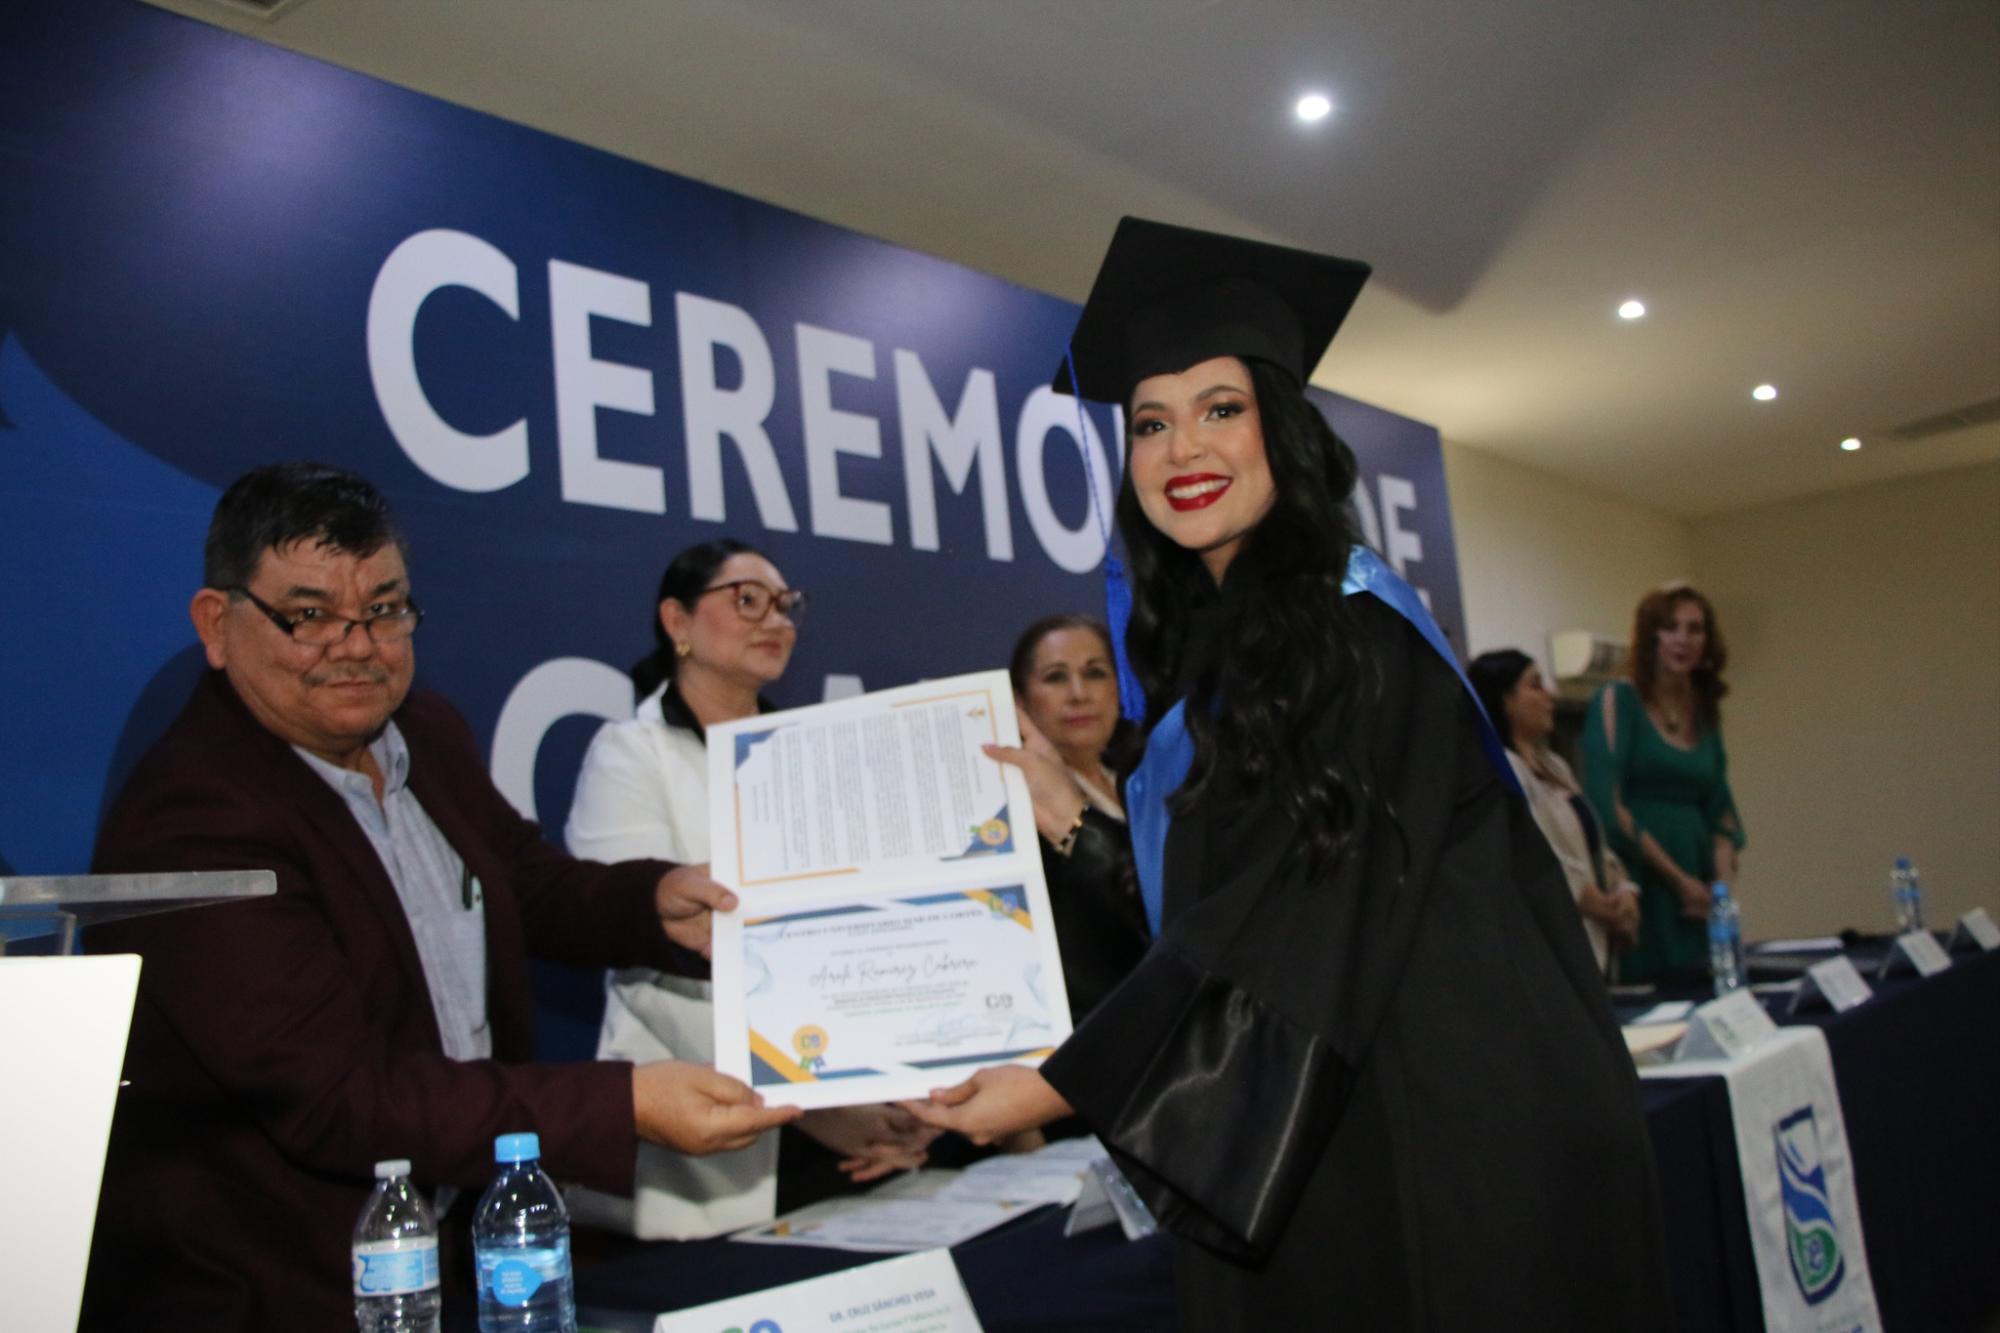 $!Aralé Ramírez Cabrera recibiendo su diploma de egresado de la maestría en desarrollo humano en la docencia.